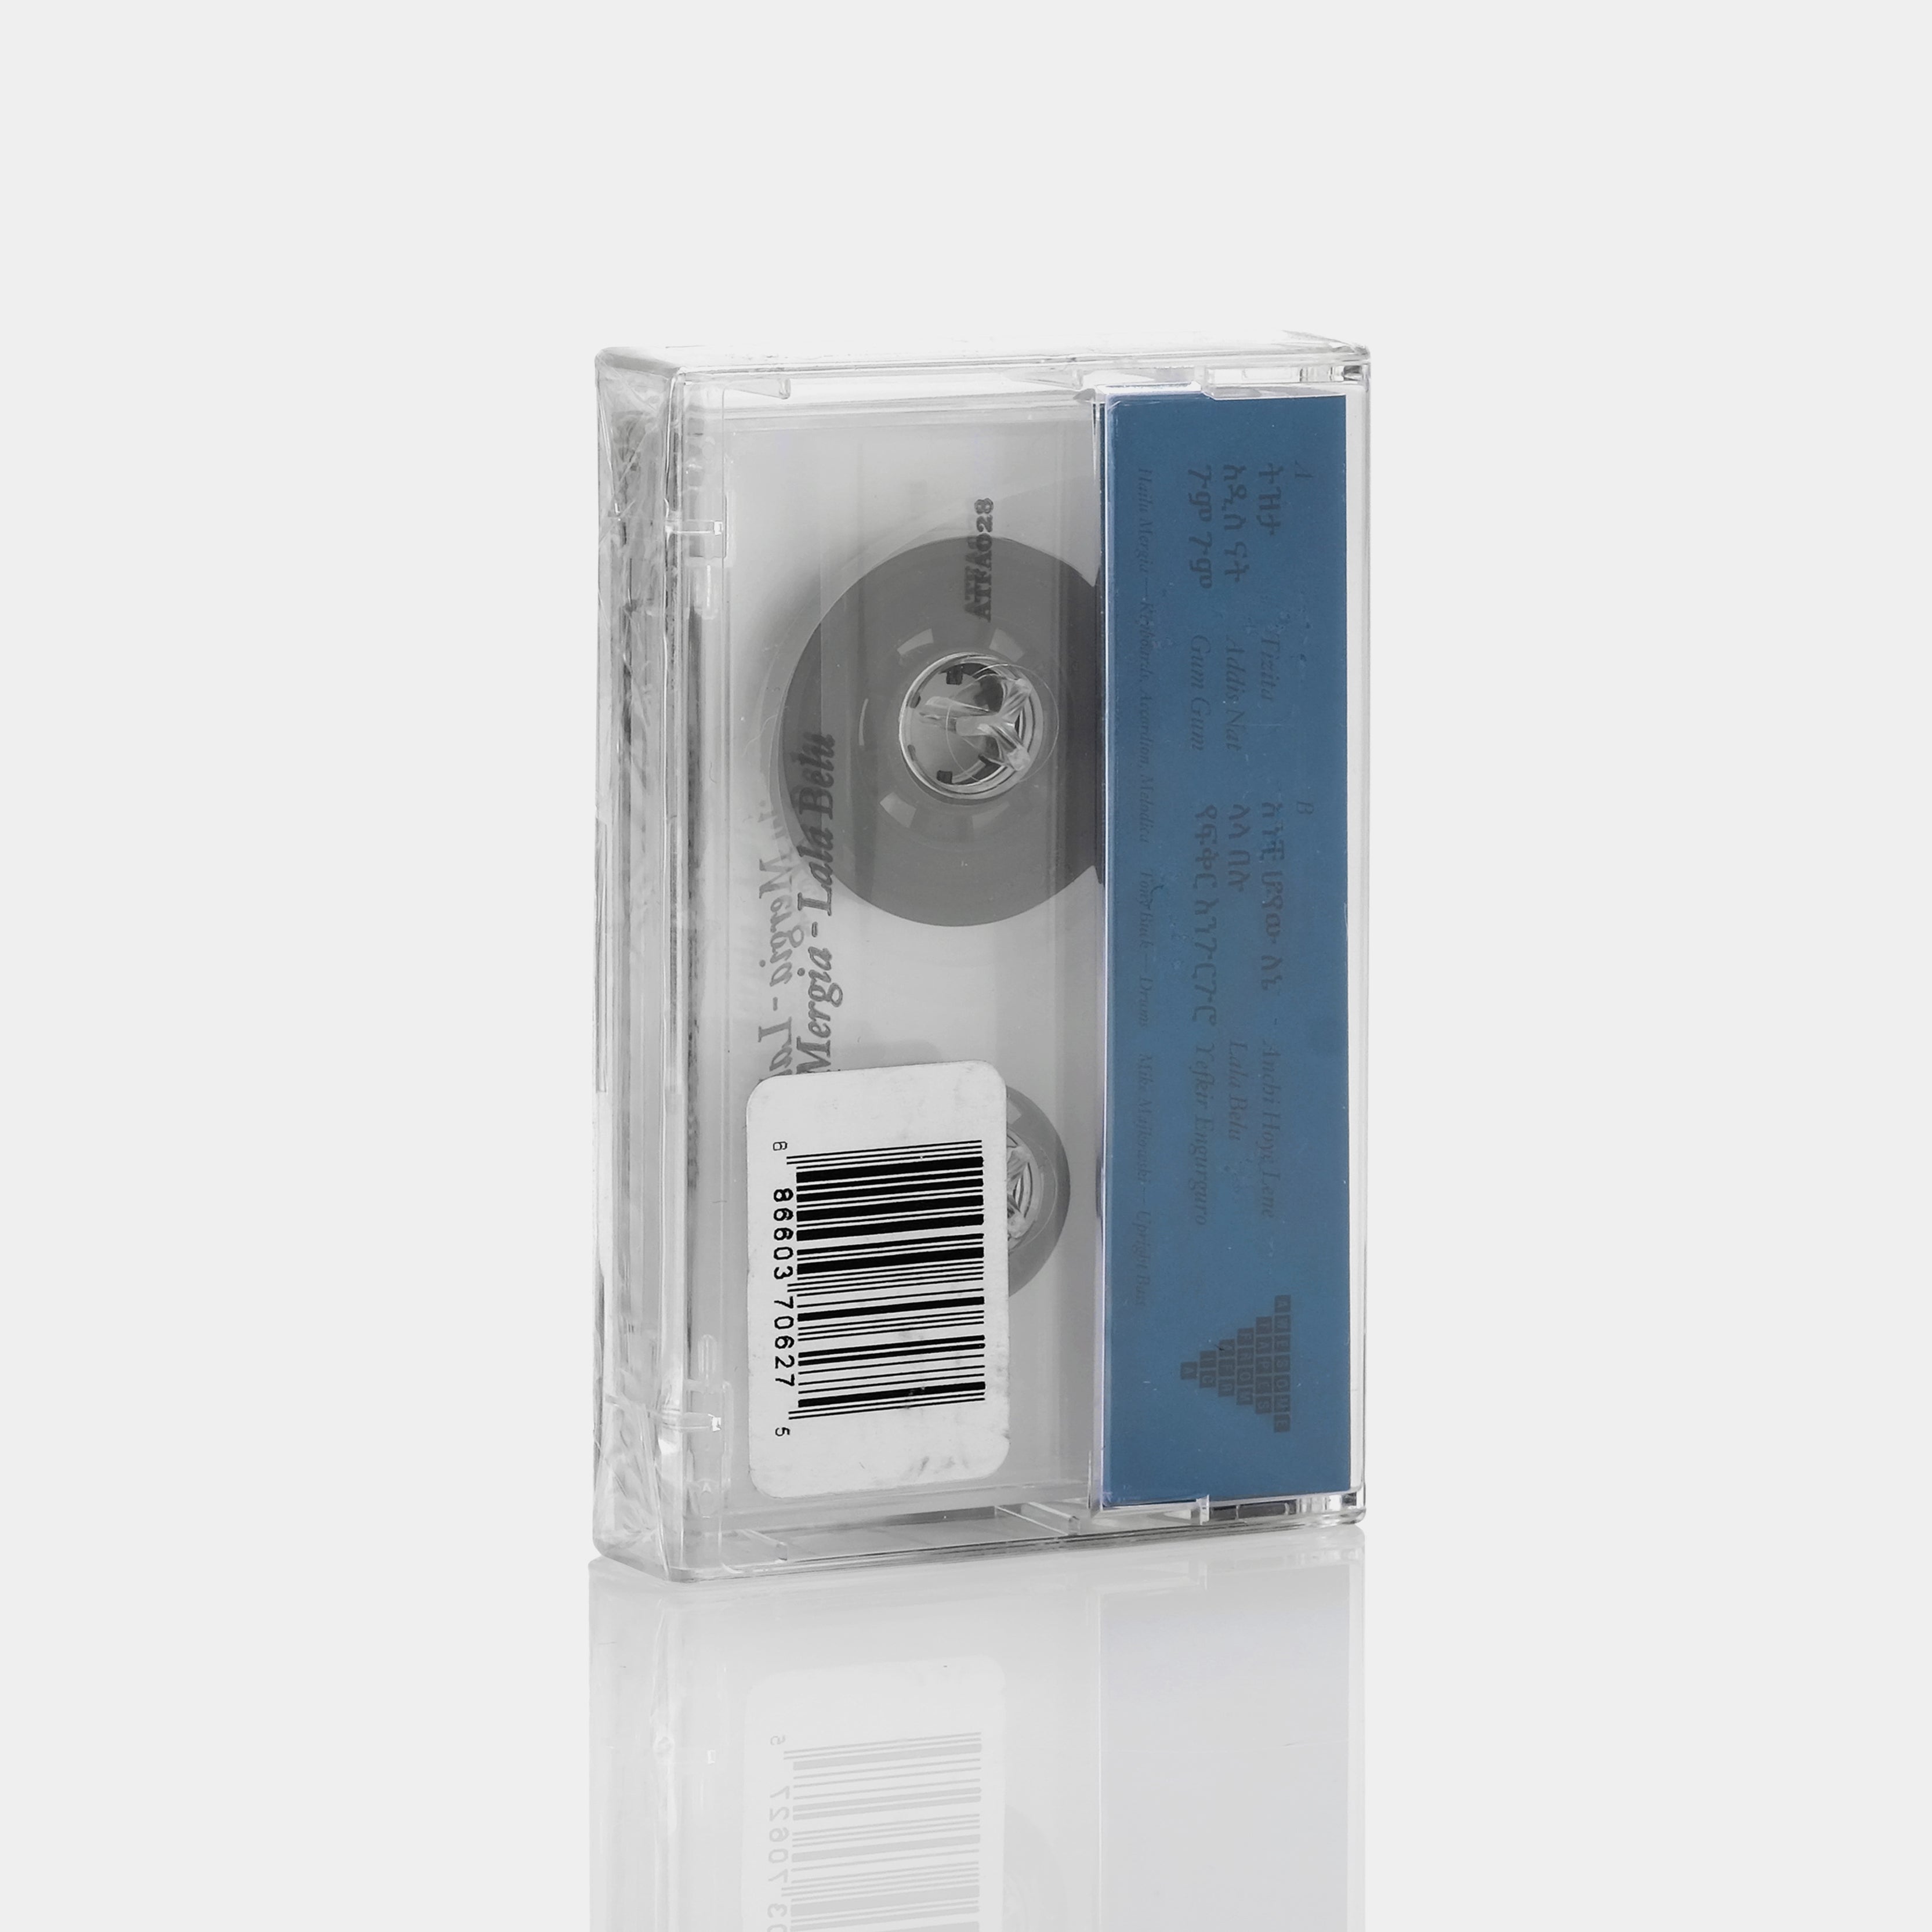 Hailu Mergia - Lala Belu Cassette Tape